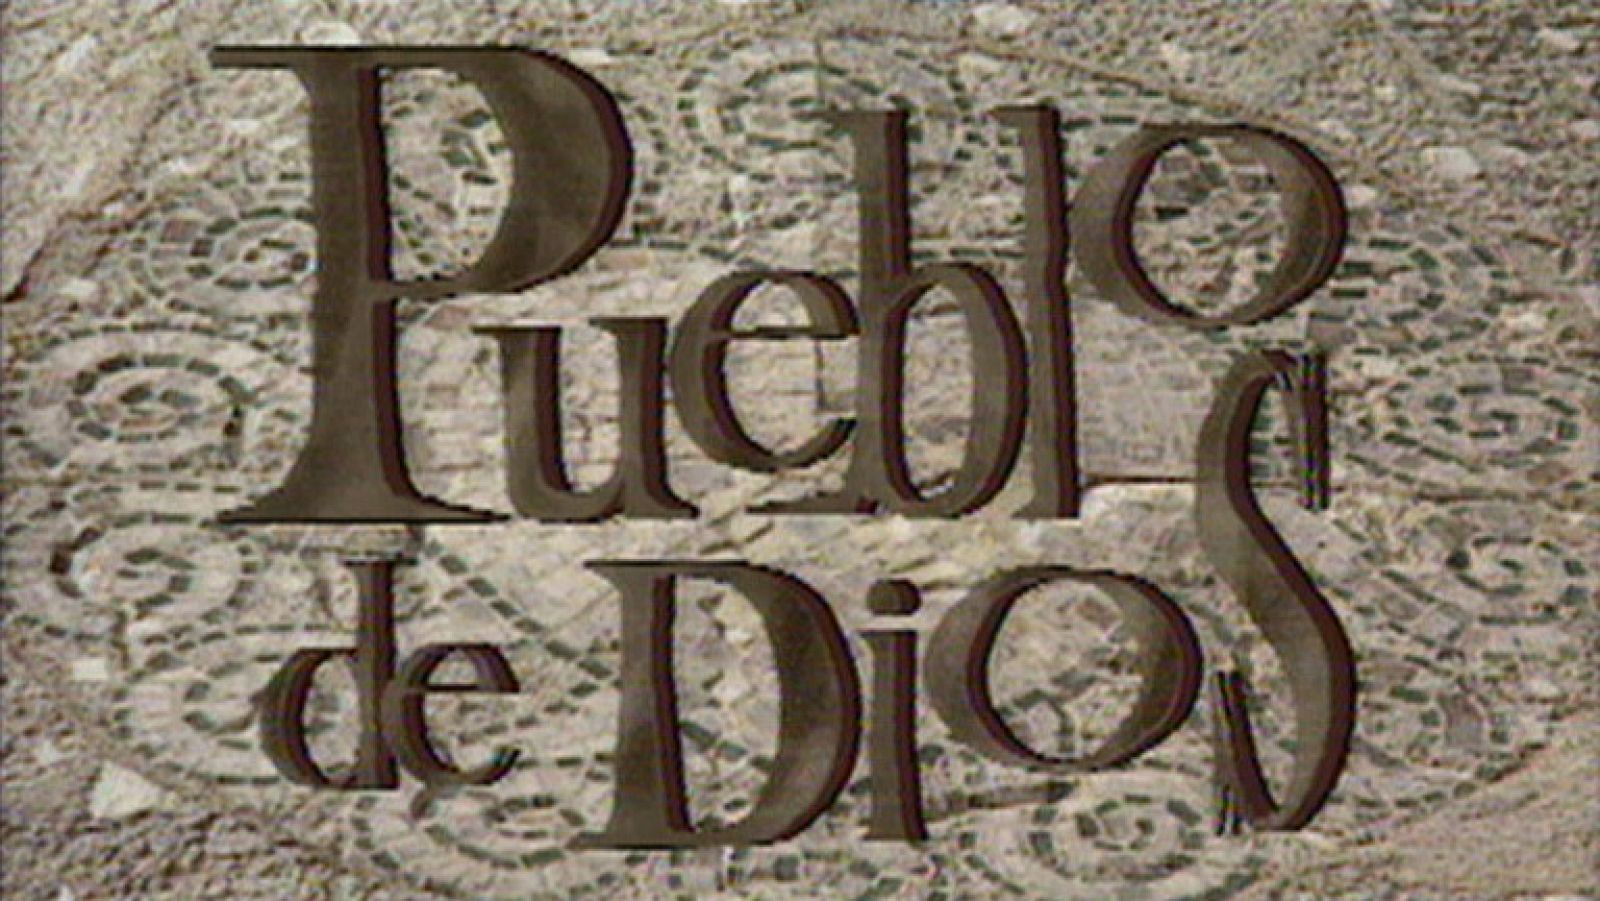 Cabecera de 'Pueblo de Dios' (1995)